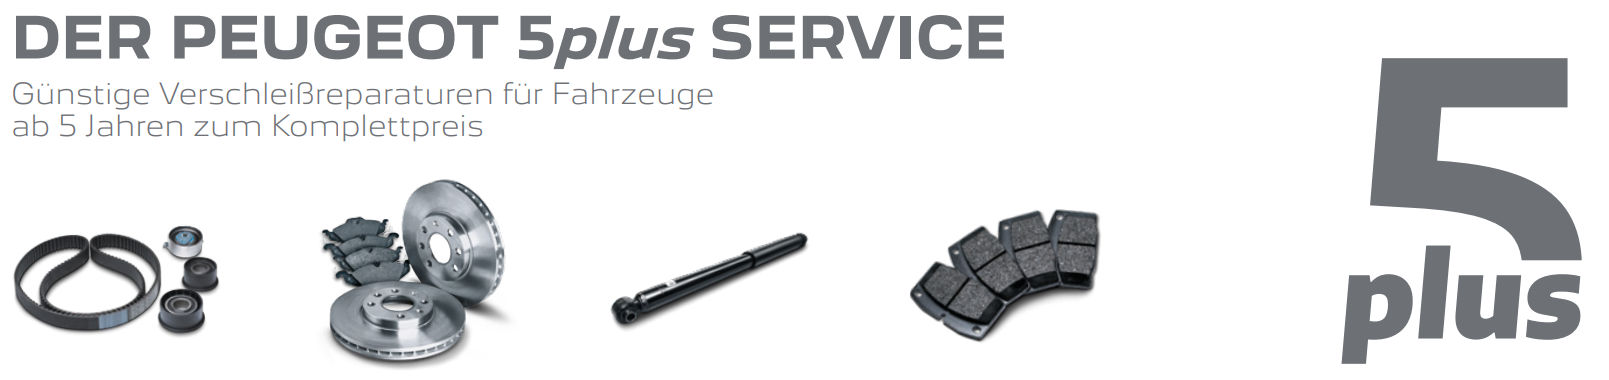 Der Peugeot 5plus Service - Günstige Verschleißreperaturen für Fahrzeuge ab 5 Jahren zum Komplettpreis